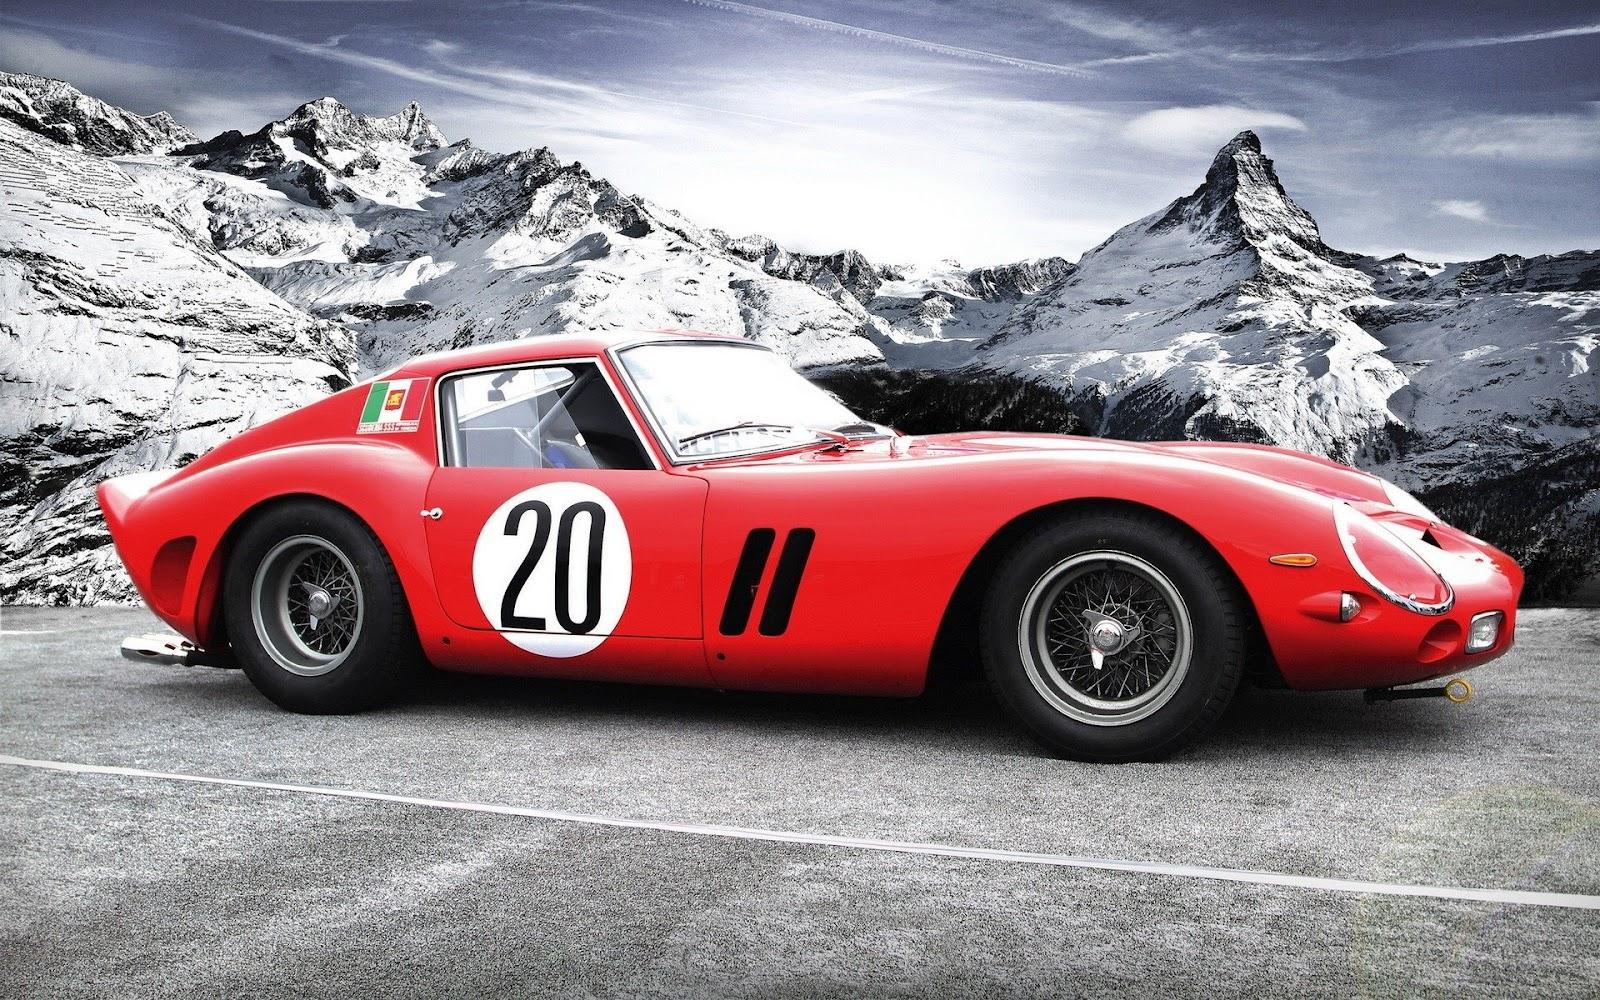 1600 x 1000 · jpeg - Wallpapers of beautiful cars: Ferrari 250 GTO